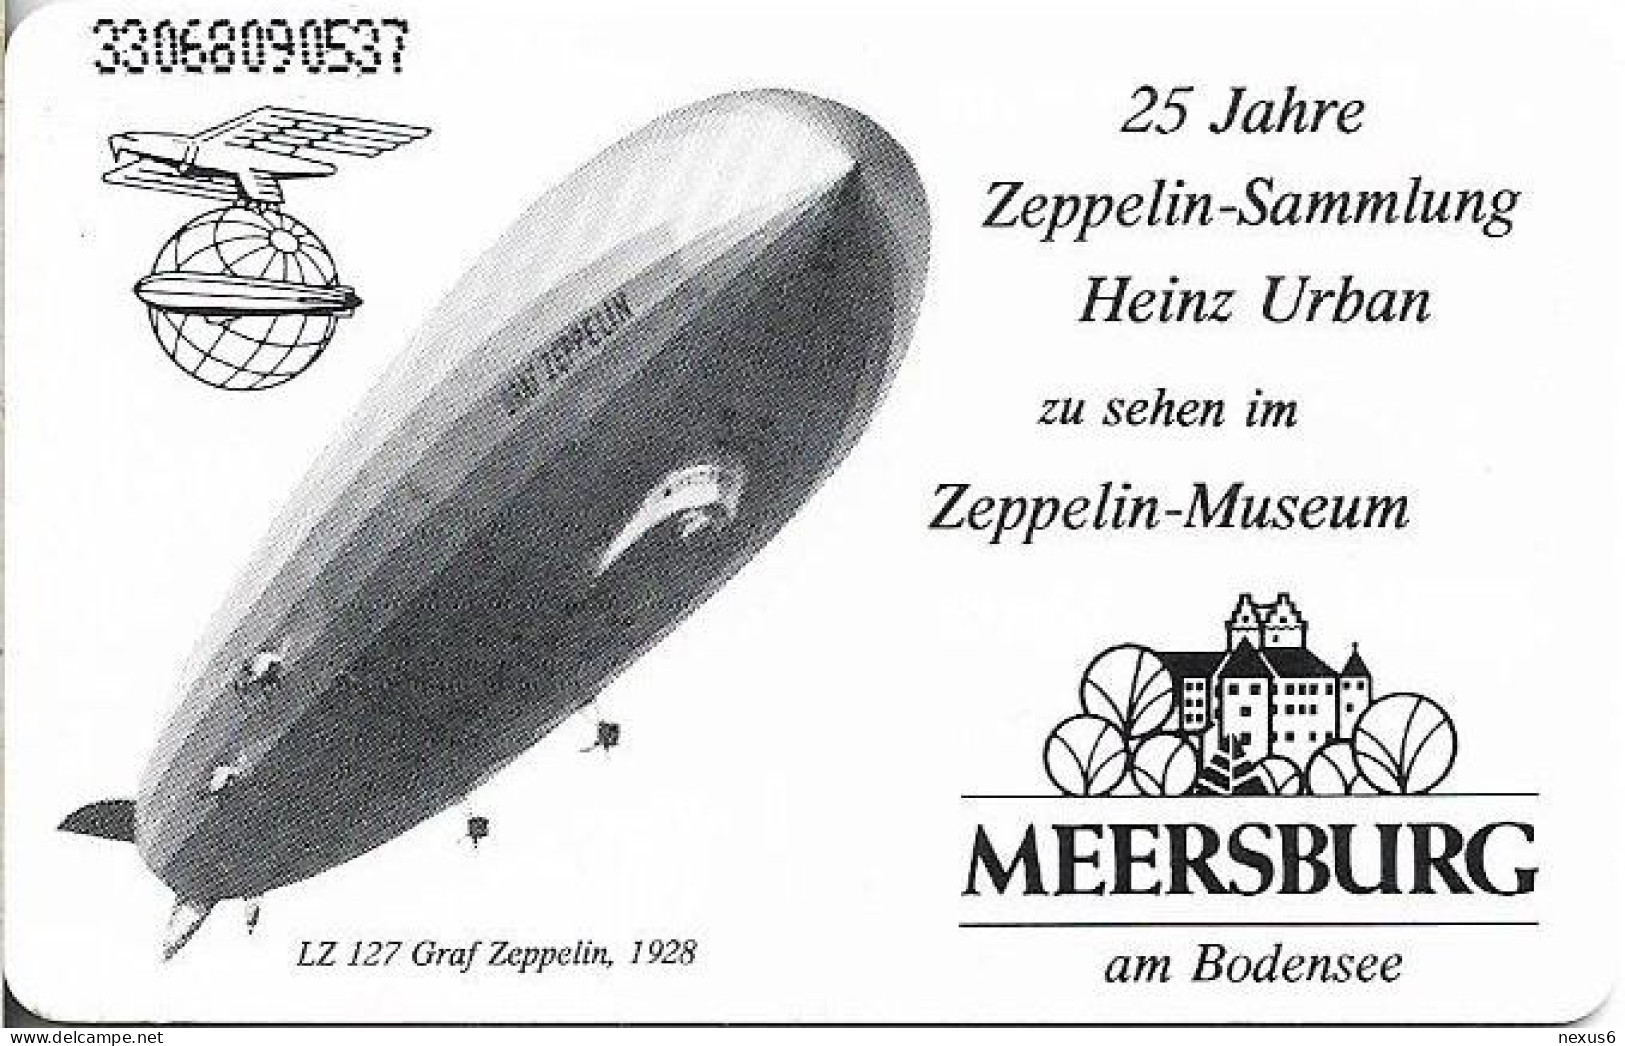 Germany - Zeppelin-Museum Meersburg - O 0015 - 06.1993, 6DM, 3.000ex, Mint - O-Series : Customers Sets